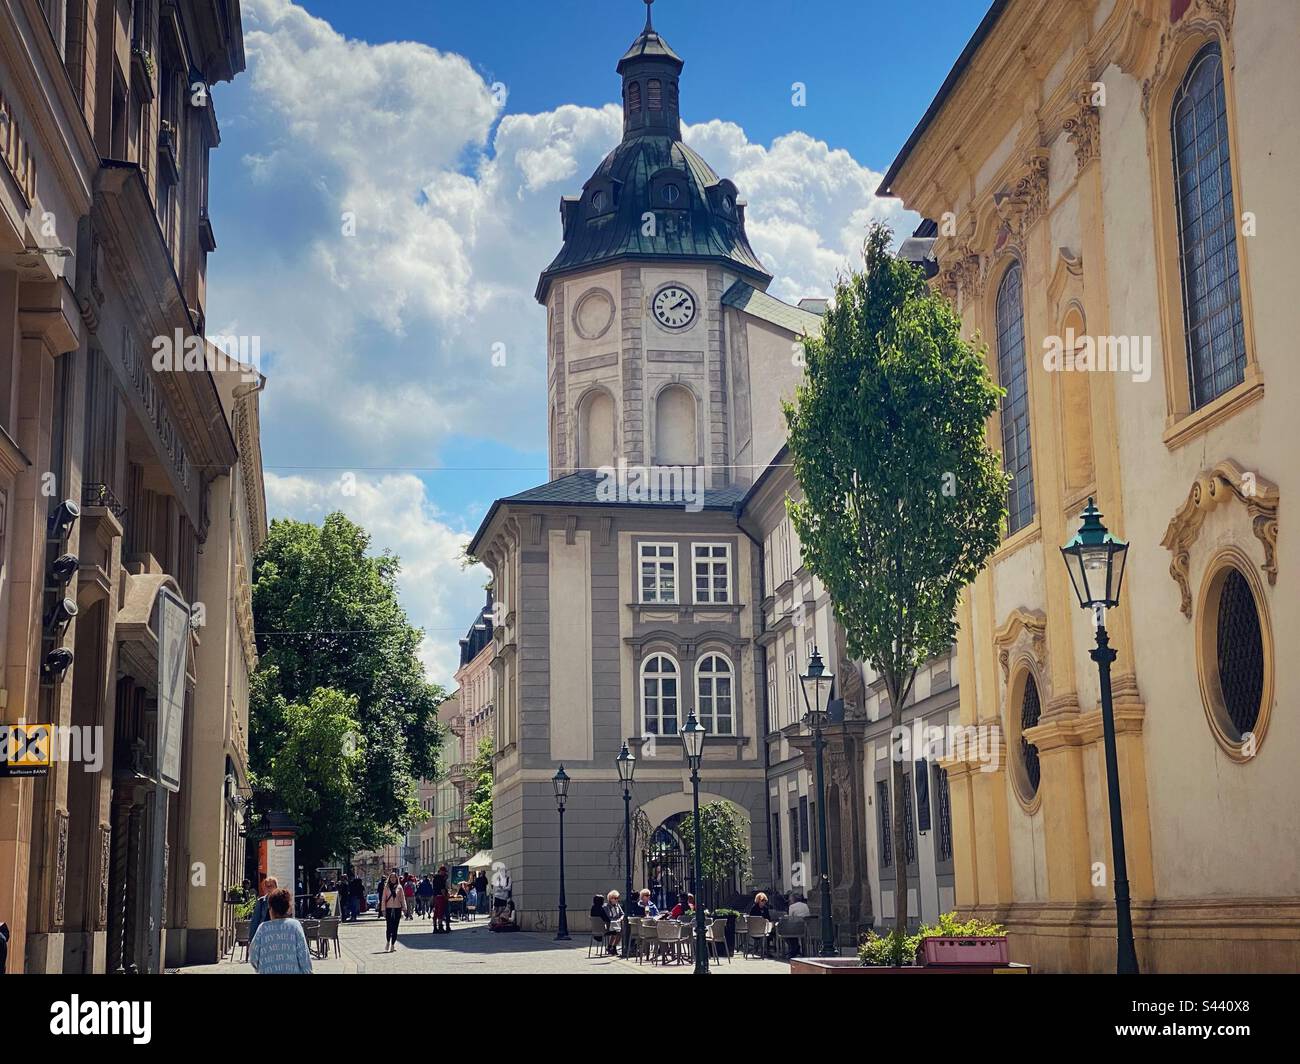 Tour de l'horloge de l'ancien monastère des religieuses dominicaines dans le centre historique de Pilsen, République tchèque. Banque D'Images